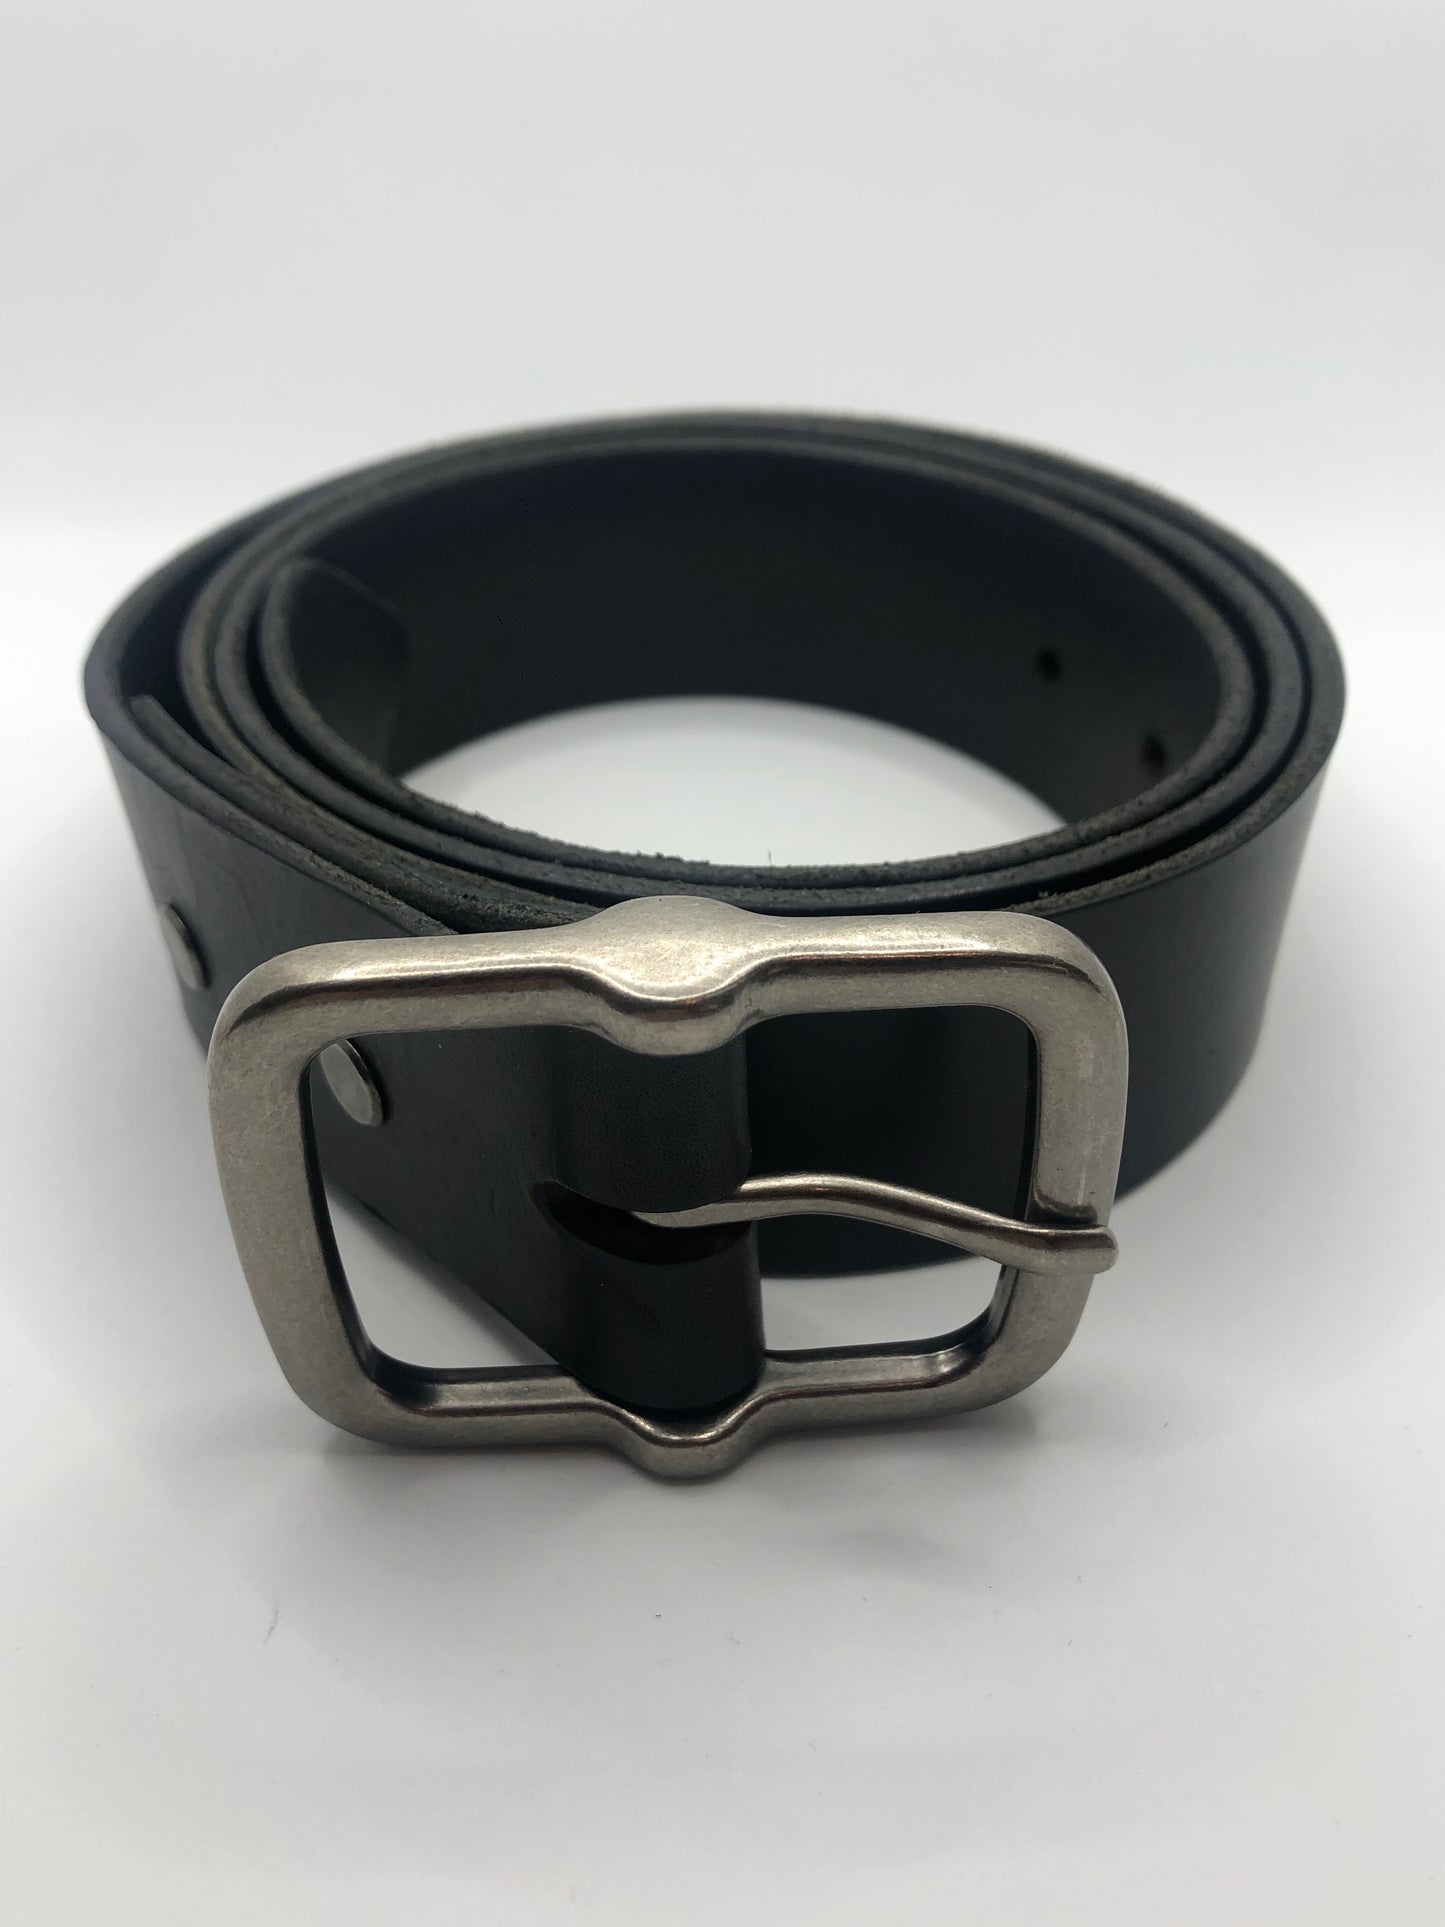 Utah - Premium Black Leather Belt